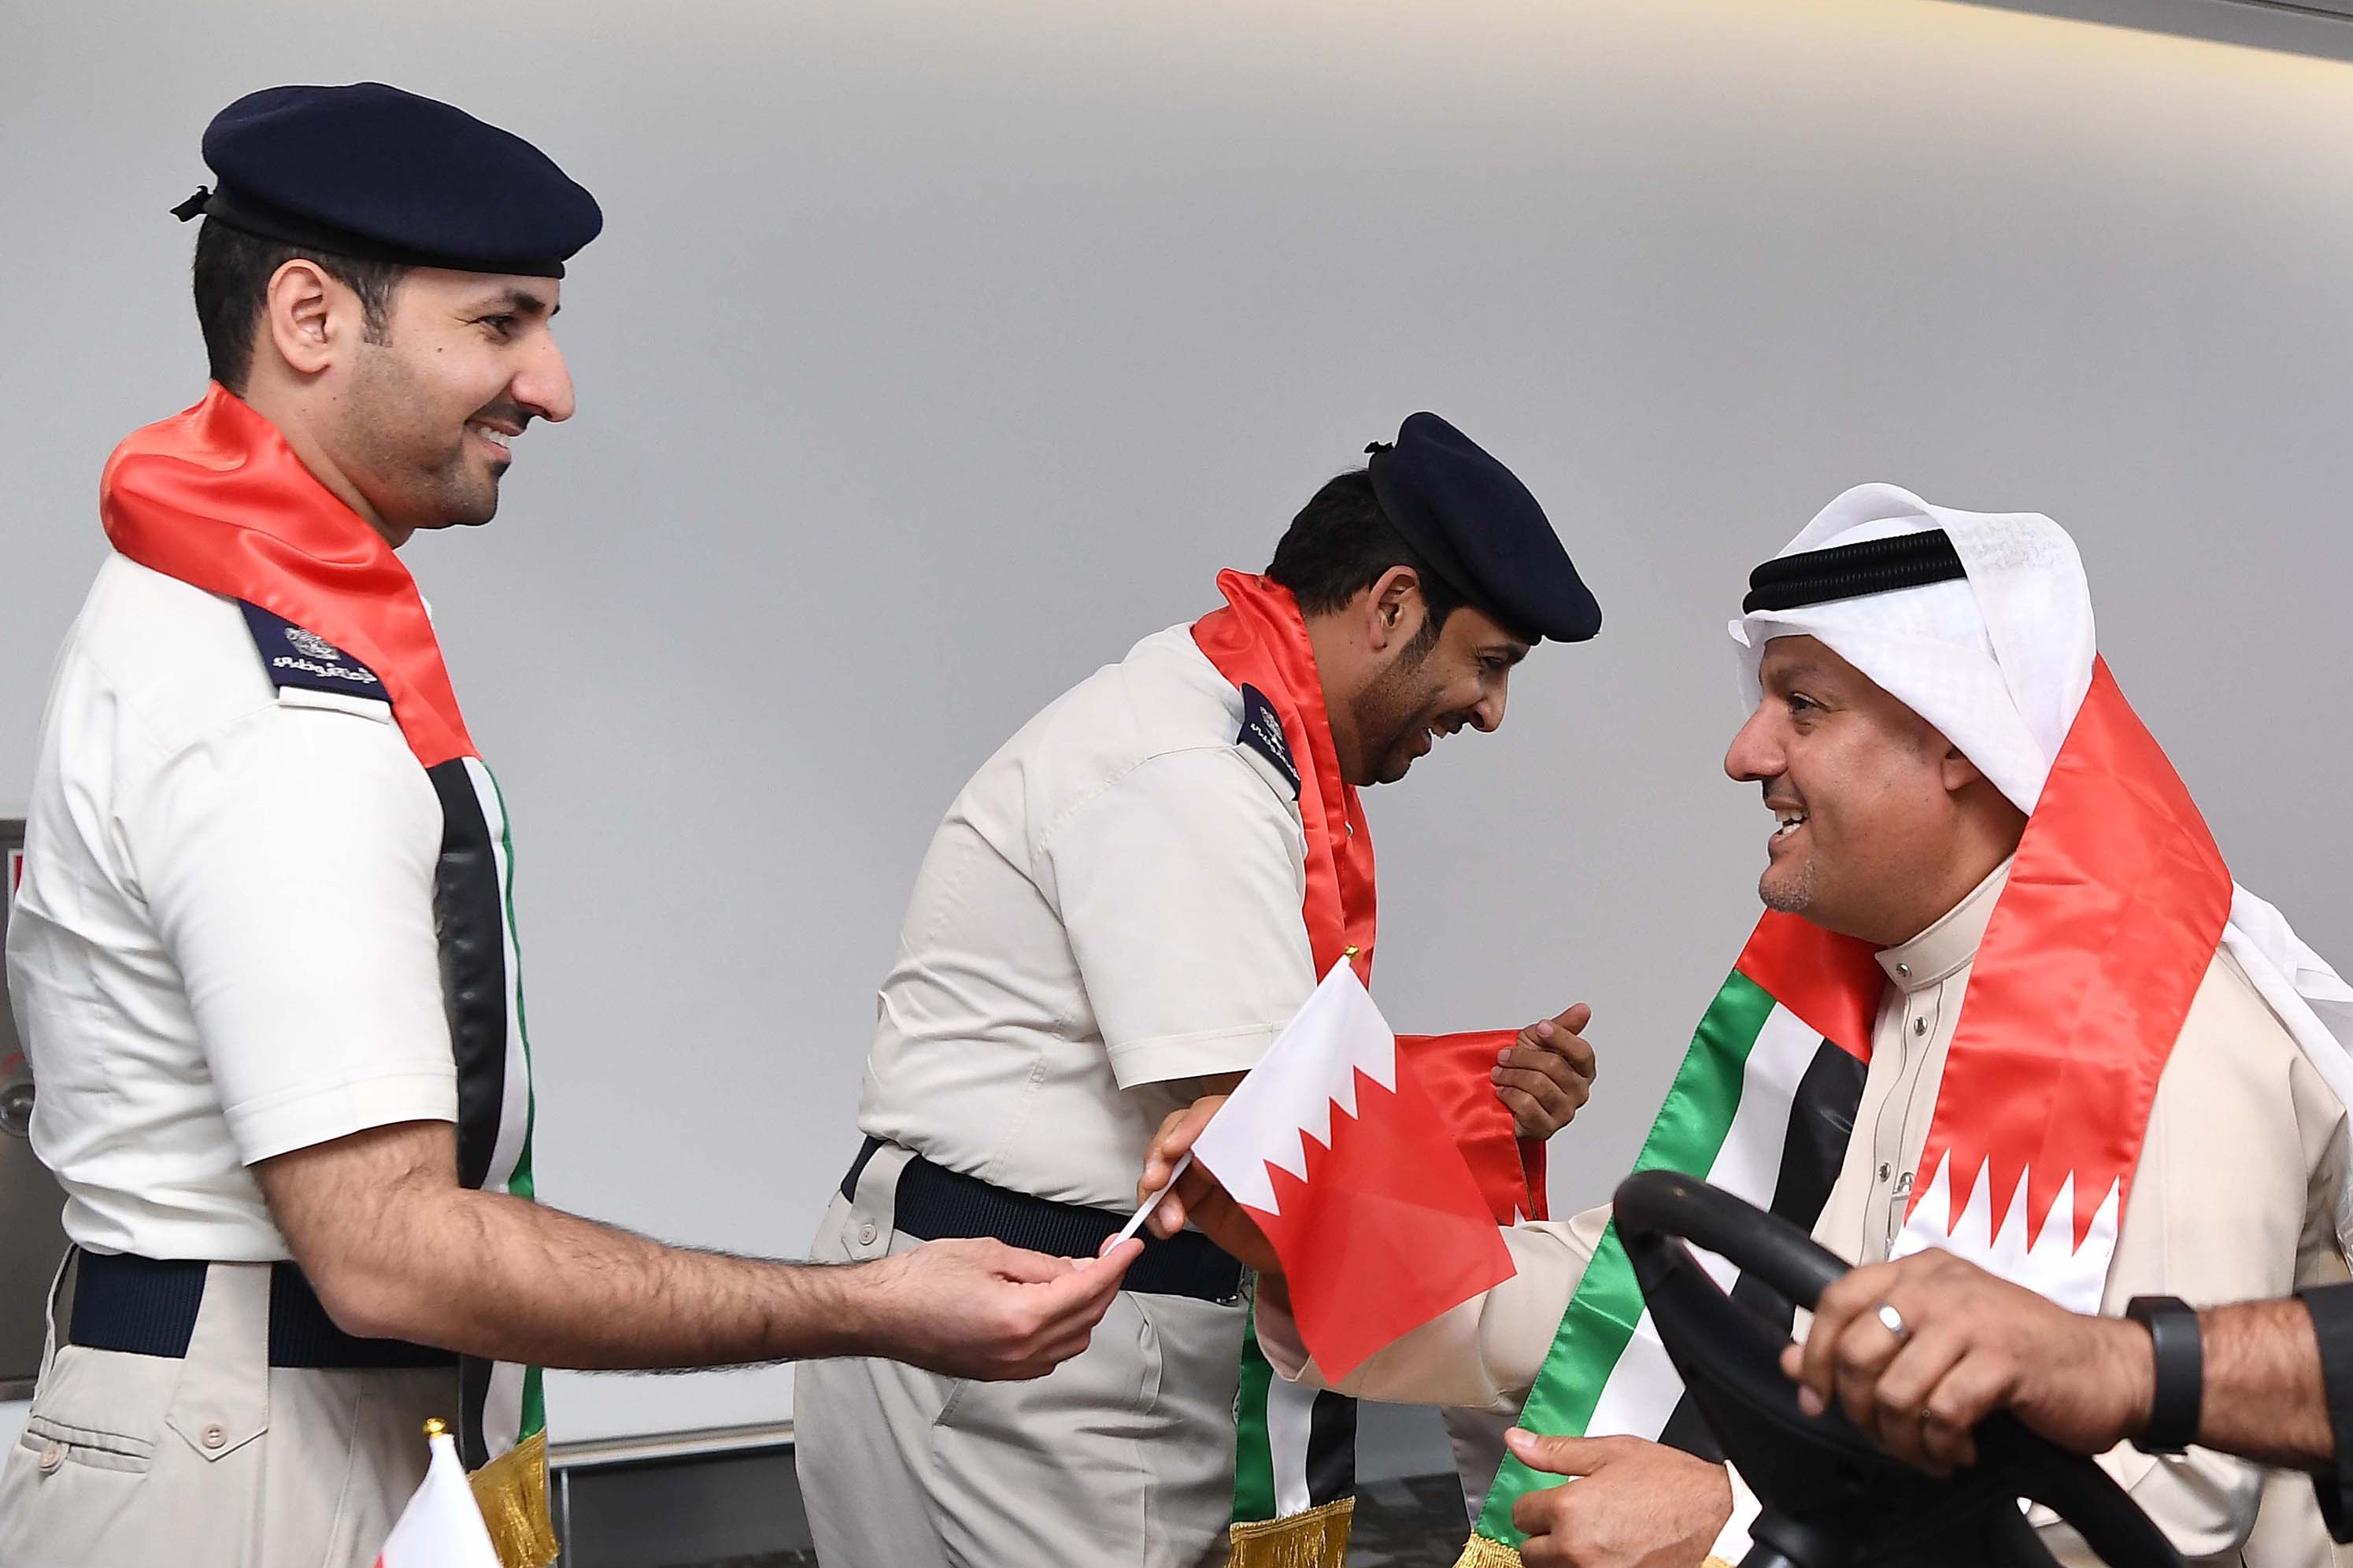 شرطة أبوظبي تستقبل البحرينيين في المطار بالورود والأعلام